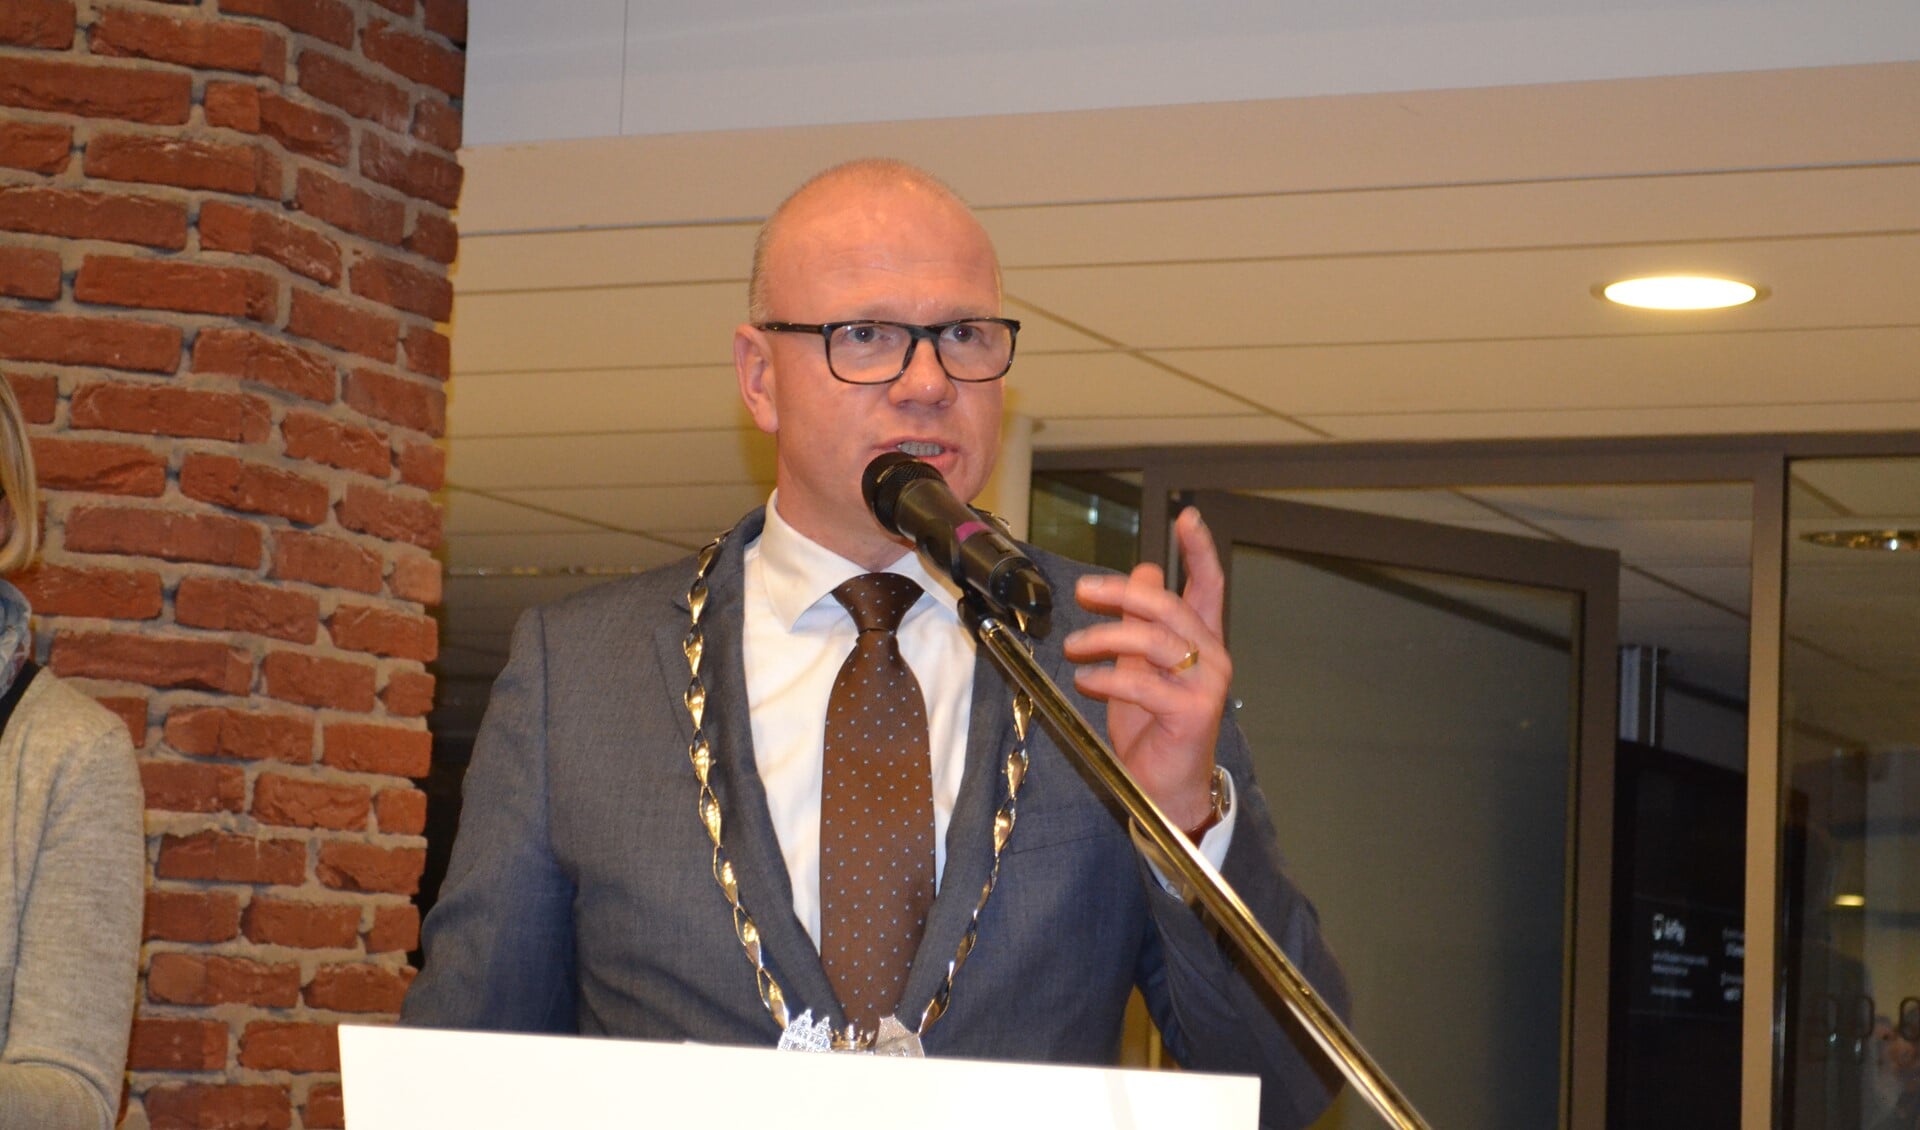 Burgemeester Klaas Tigelaar moest het grootste deel van de vragen van de raadsleden over de lokale maatregelen met betrekking tot de coronacrisis beantwoorden (archieffoto).